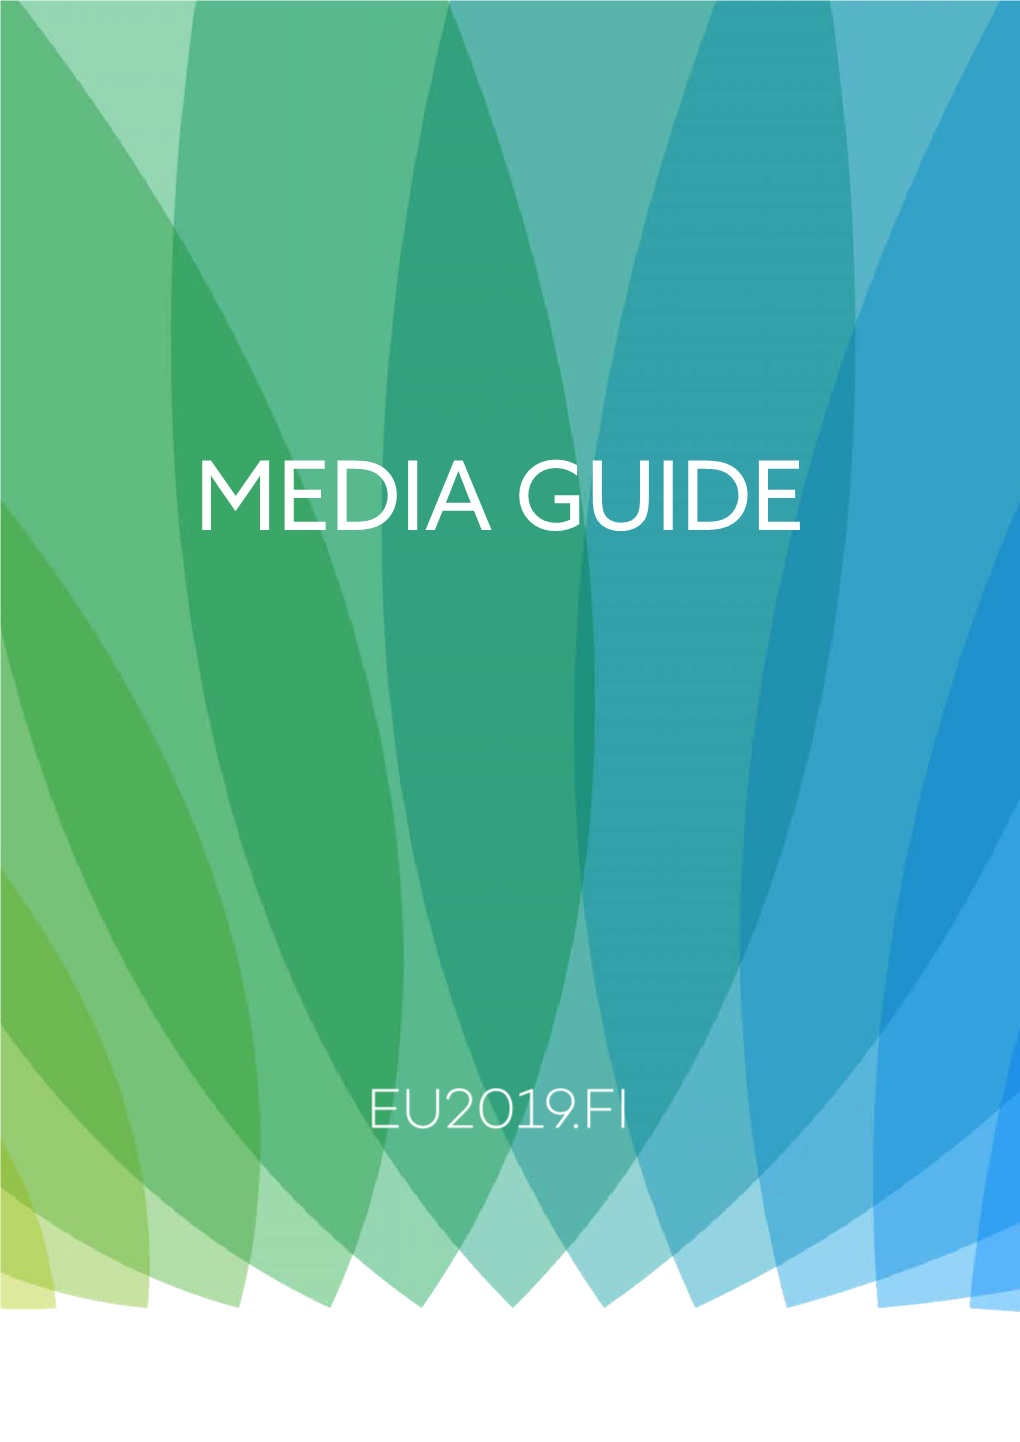 Media Guide Pdf 988Kb